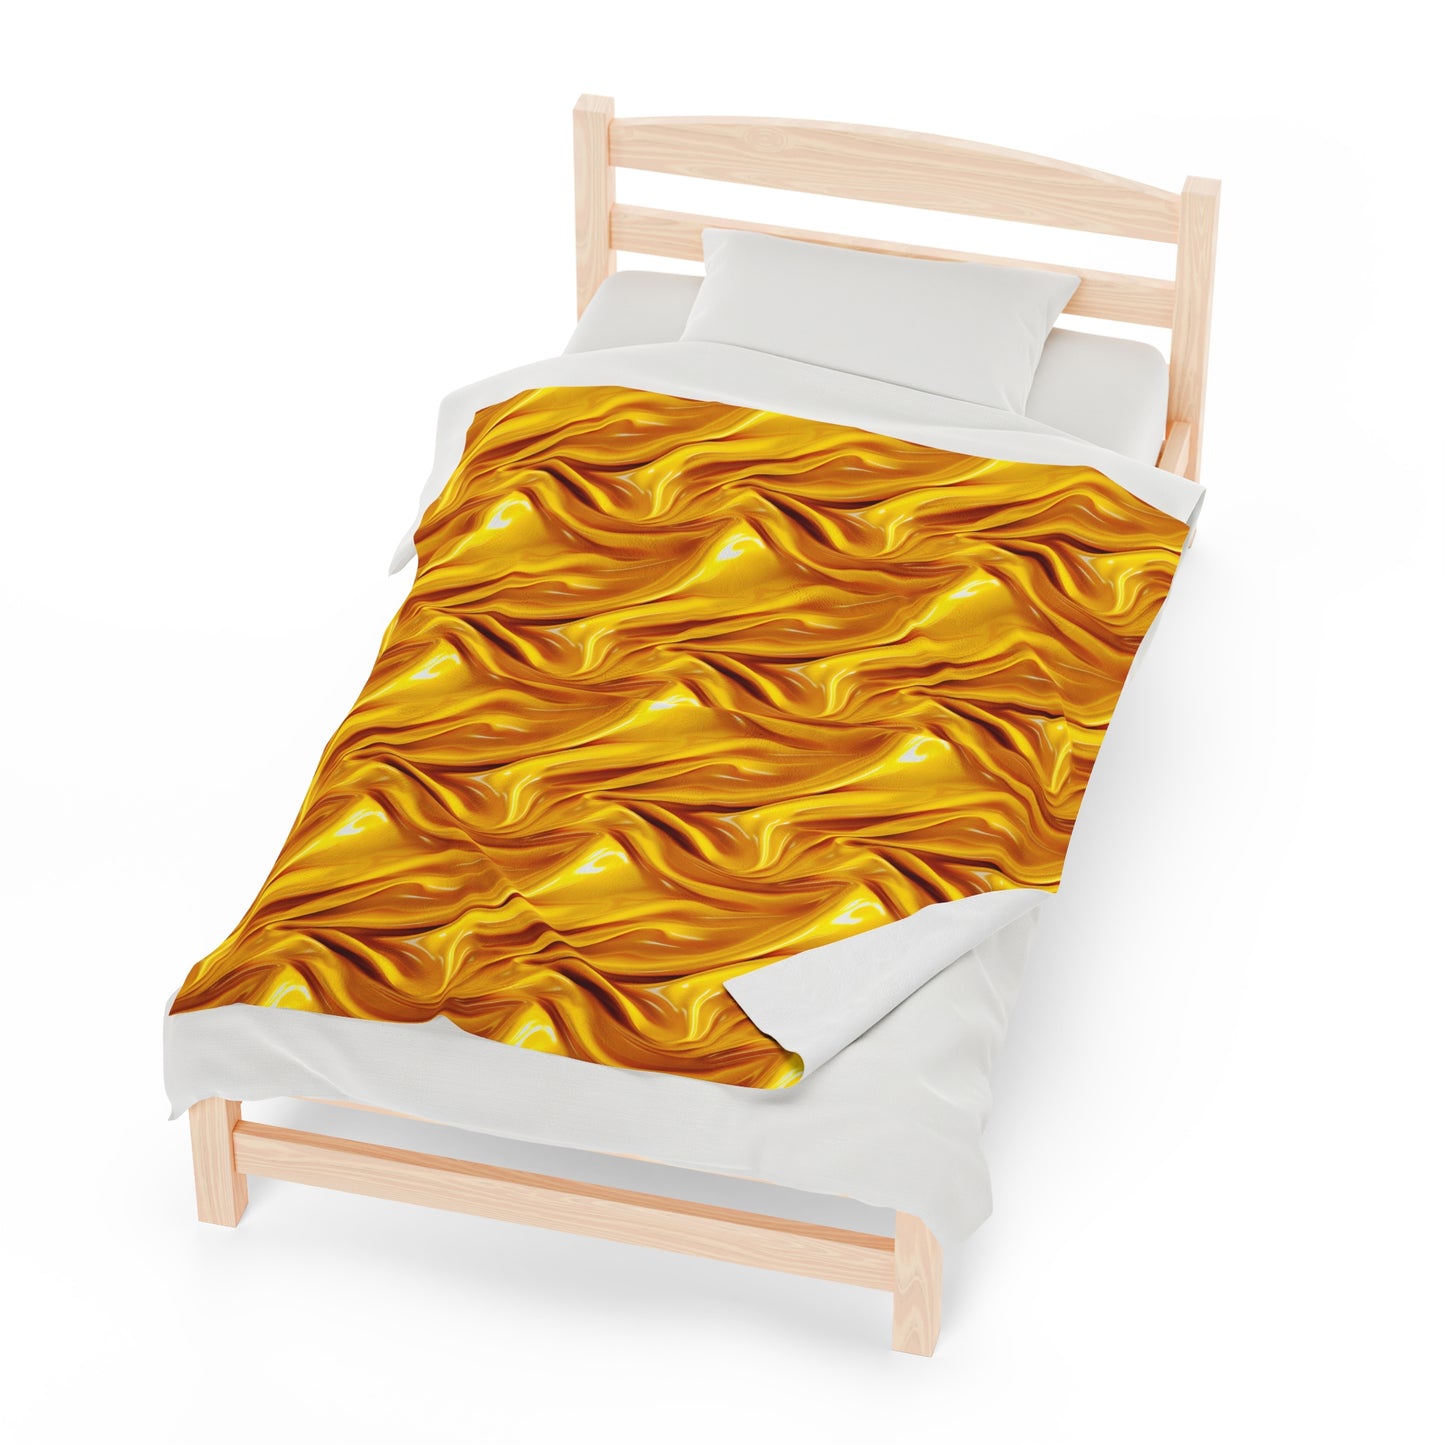 Velveteen Plush Blanket | Gold Illusion Throw Blanket